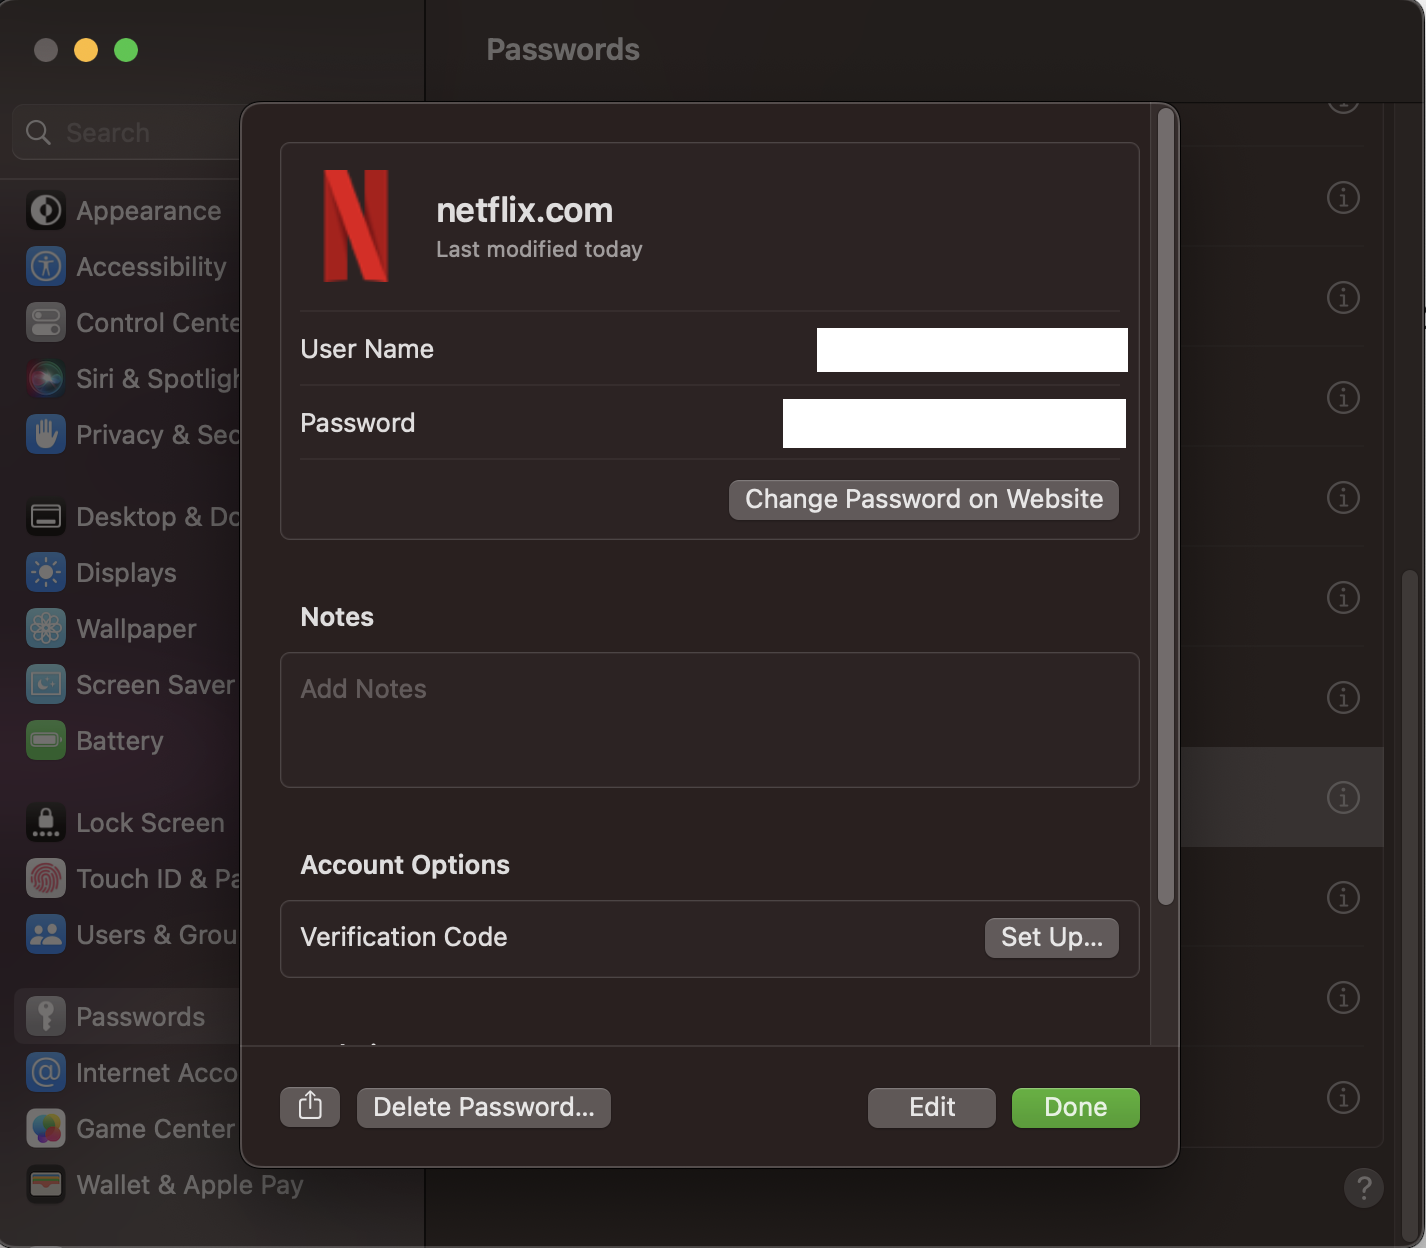 macOSのパスワード管理ツール